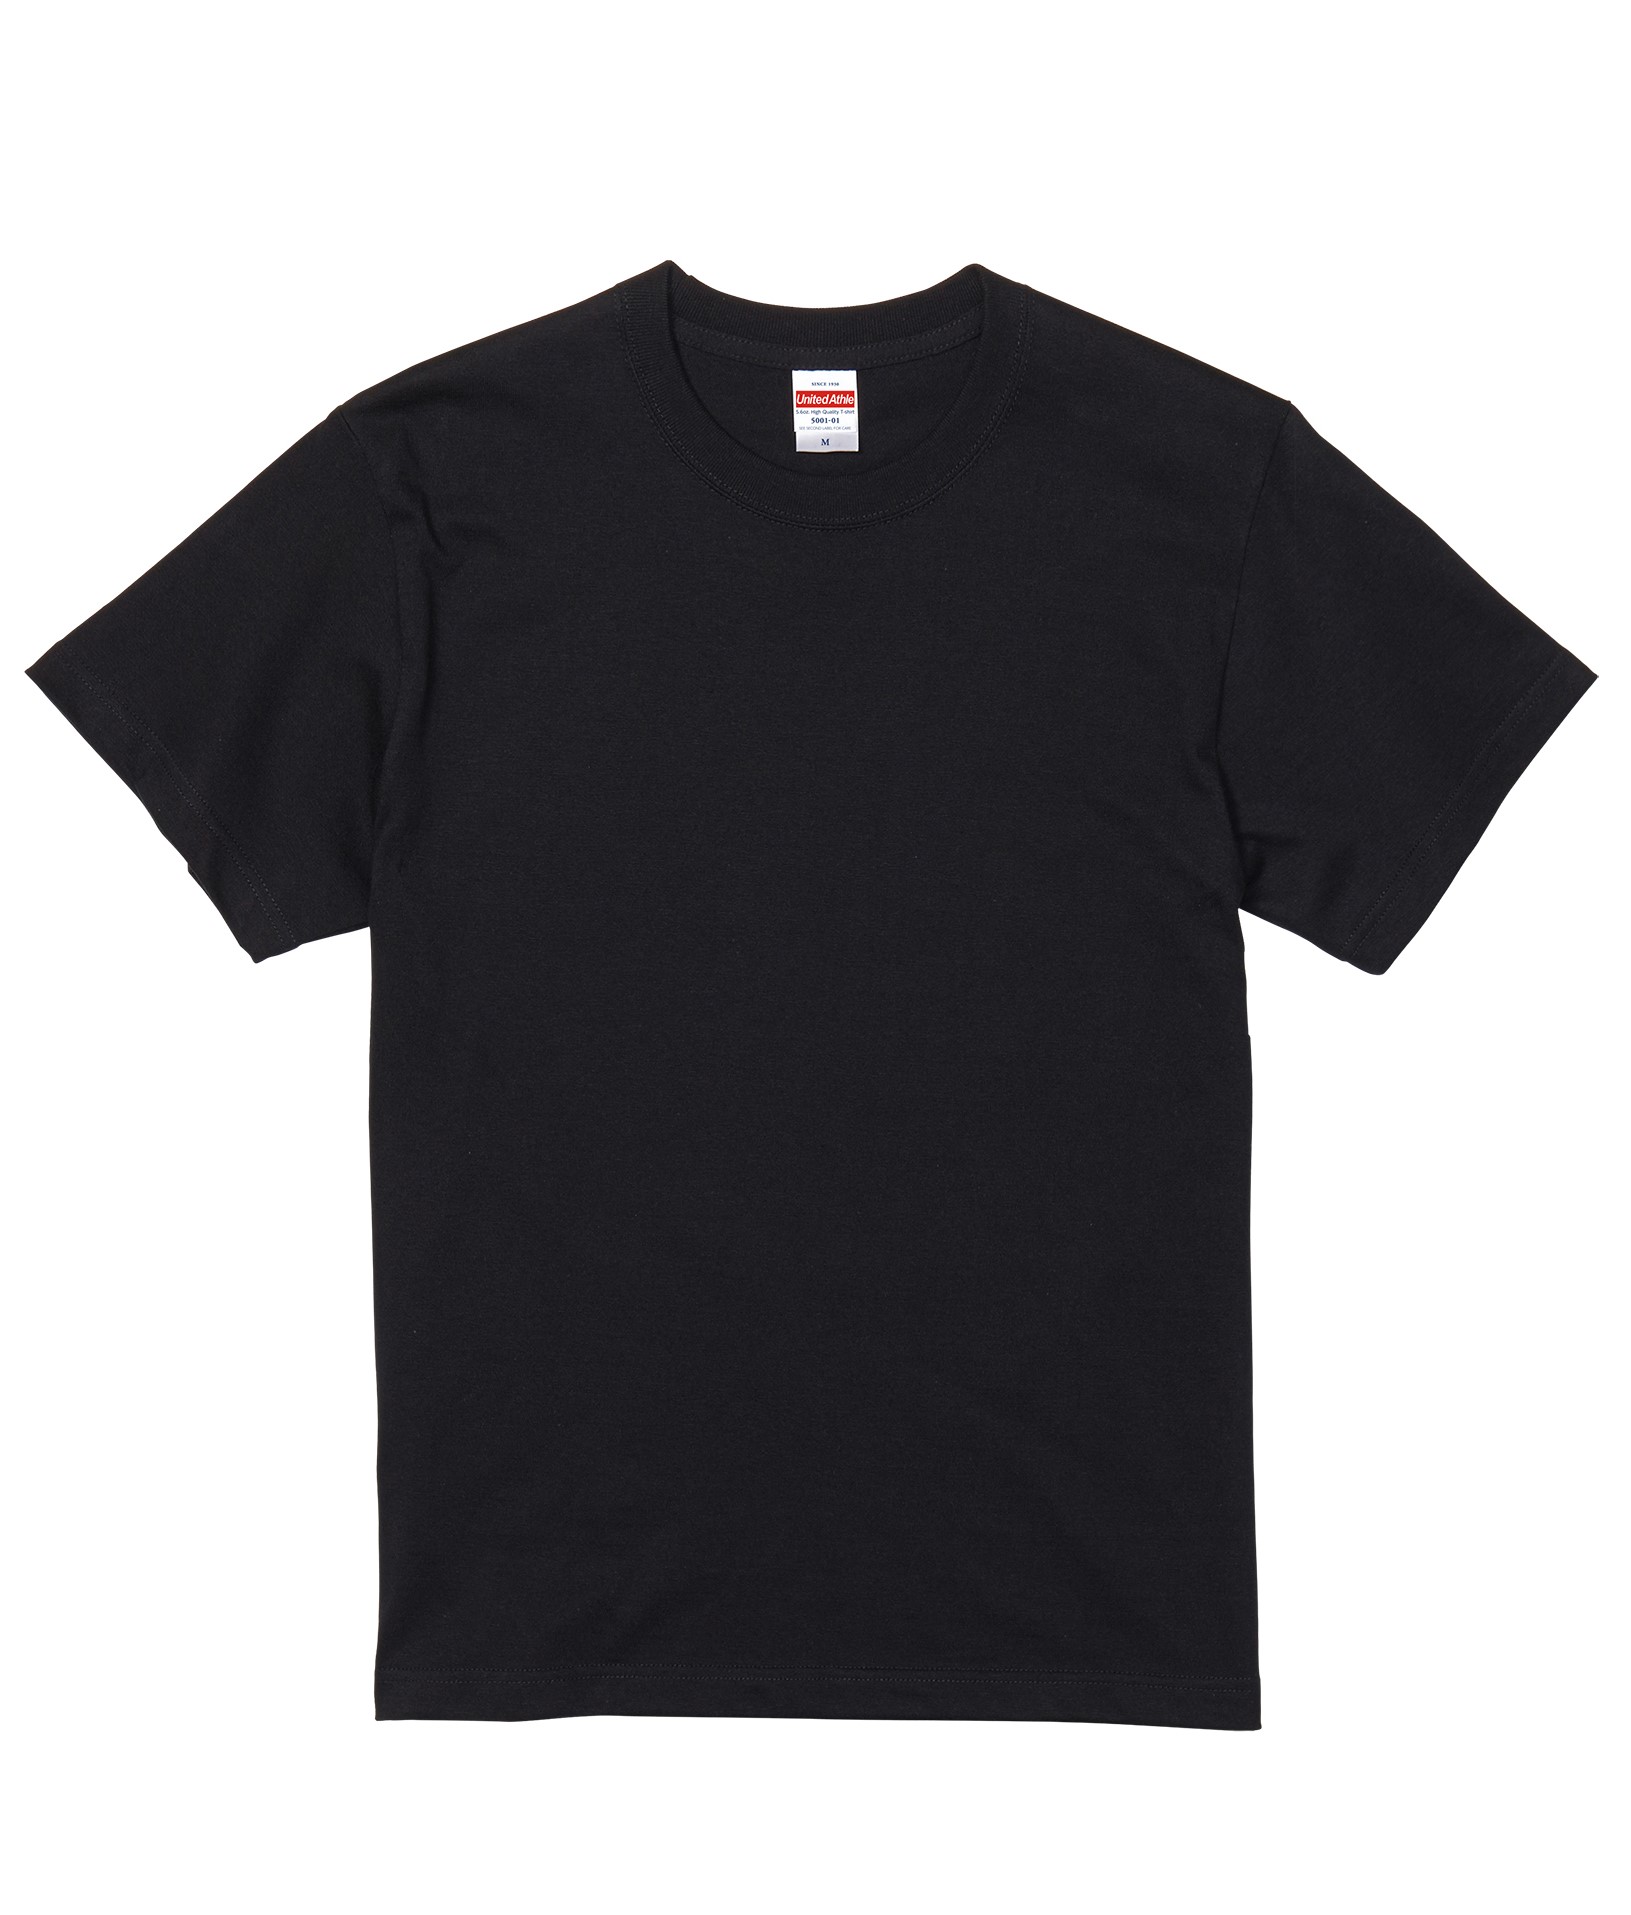 黒Tシャツ | WEB-NEXT株式会社